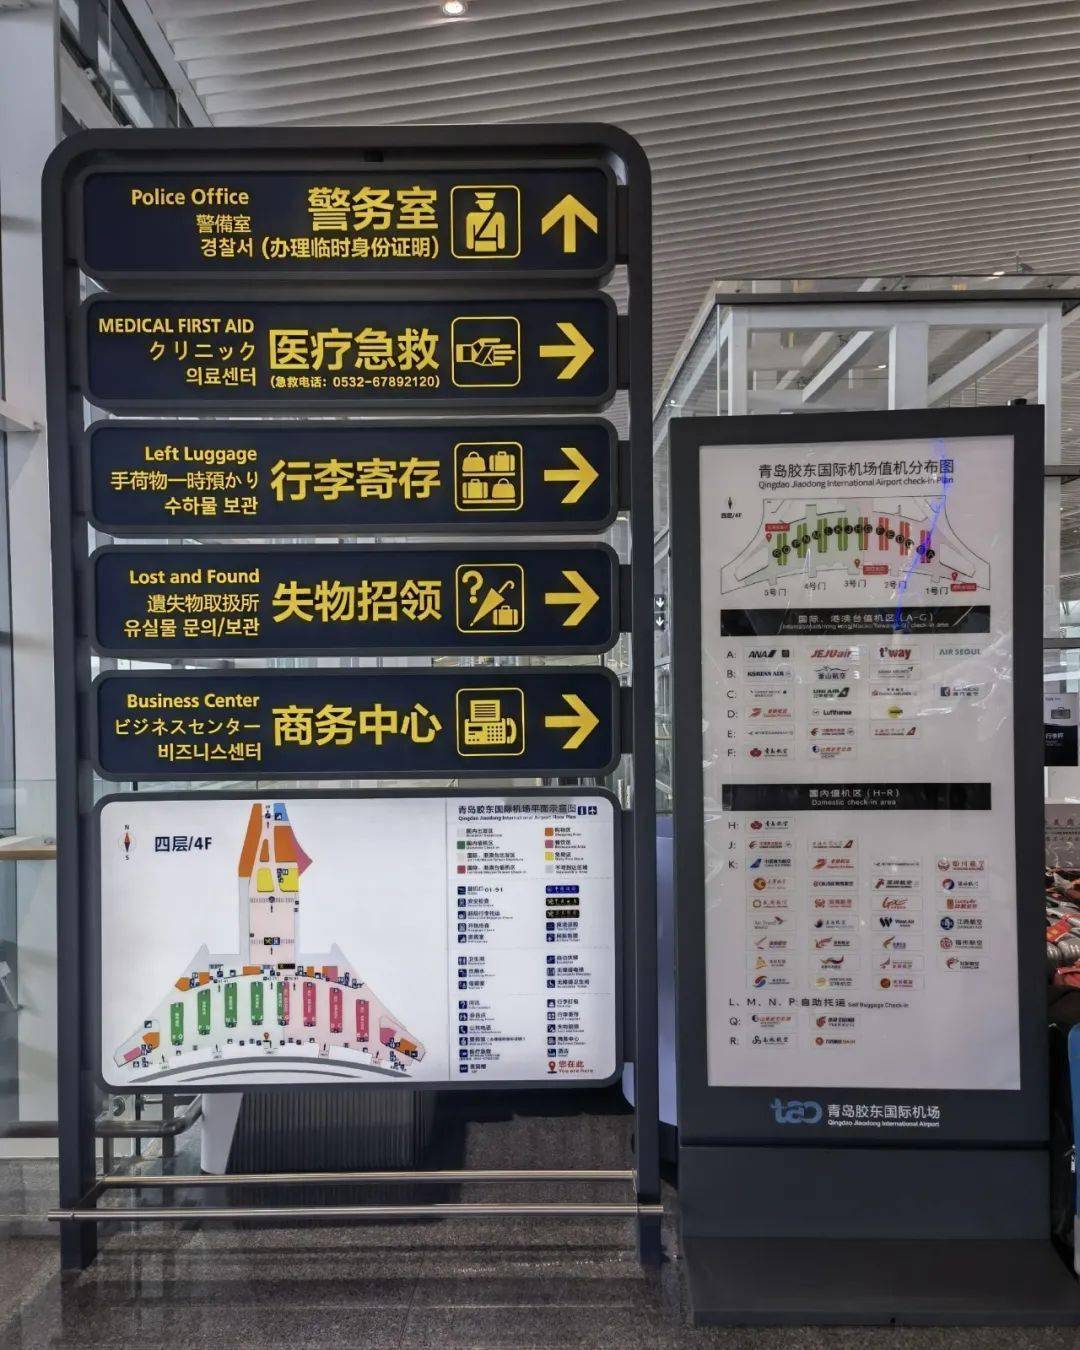 乘地铁青岛广电银色年华带您打卡胶东国际机场